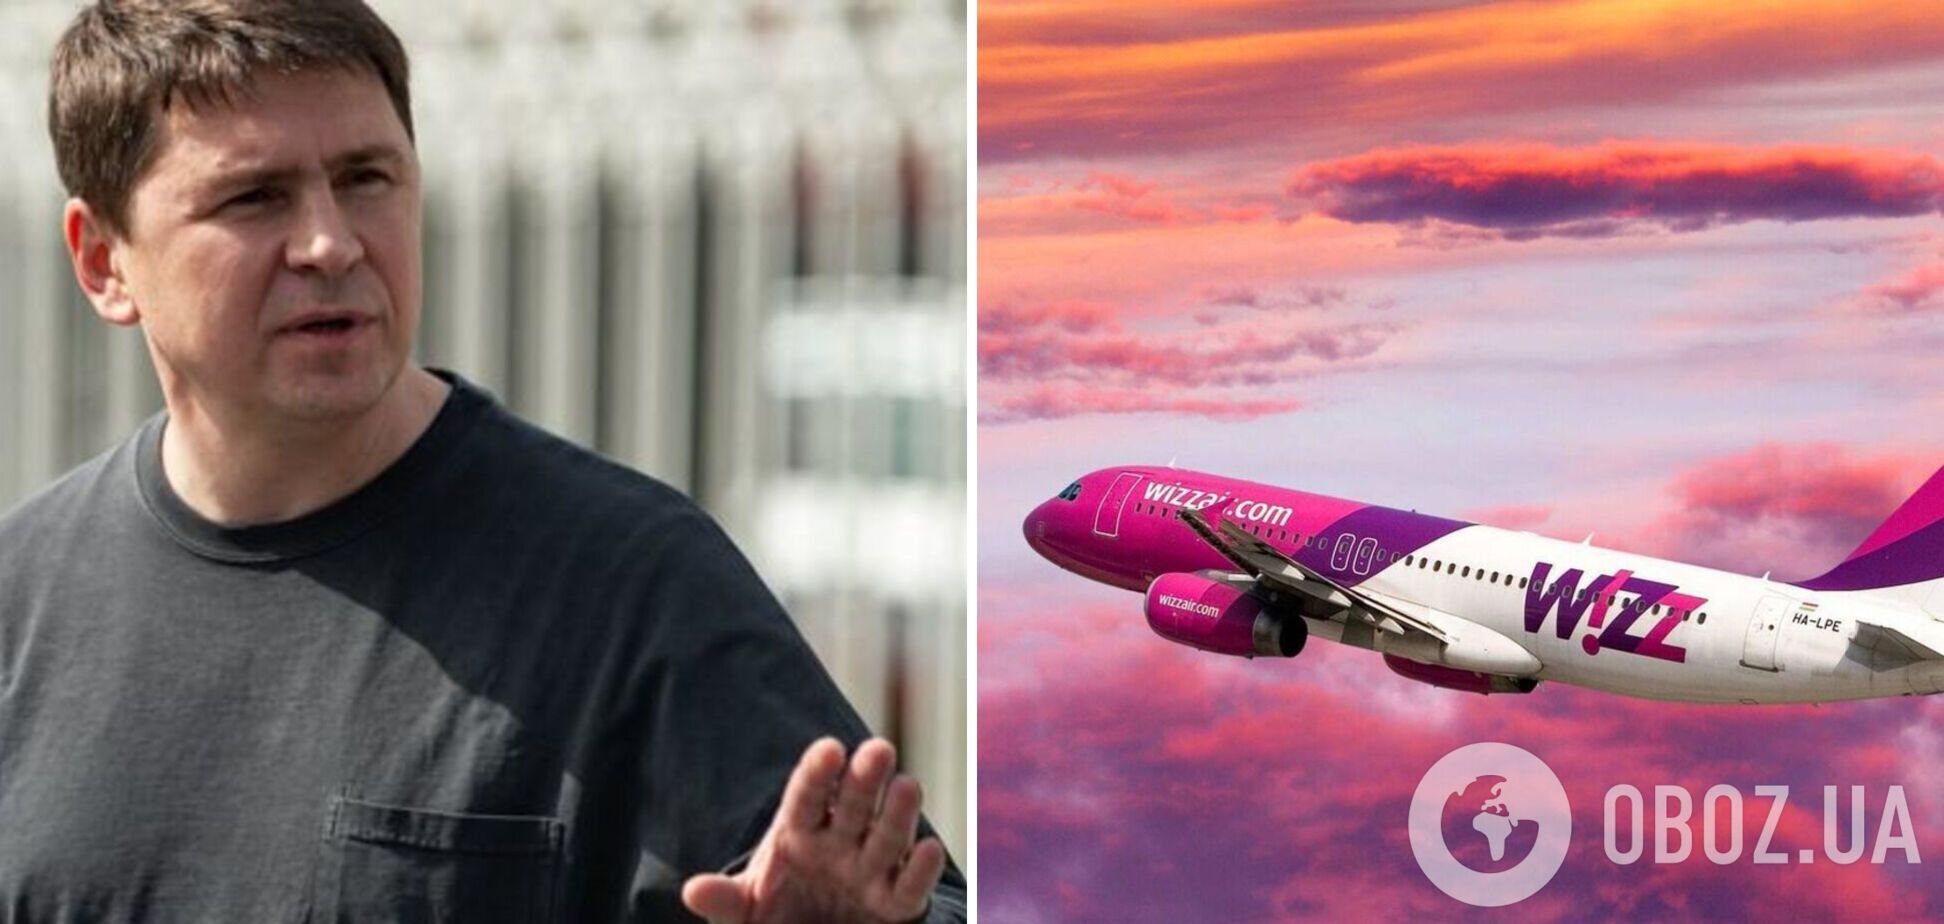 Подоляк відреагував на скандал із лоукостером Wizz Air